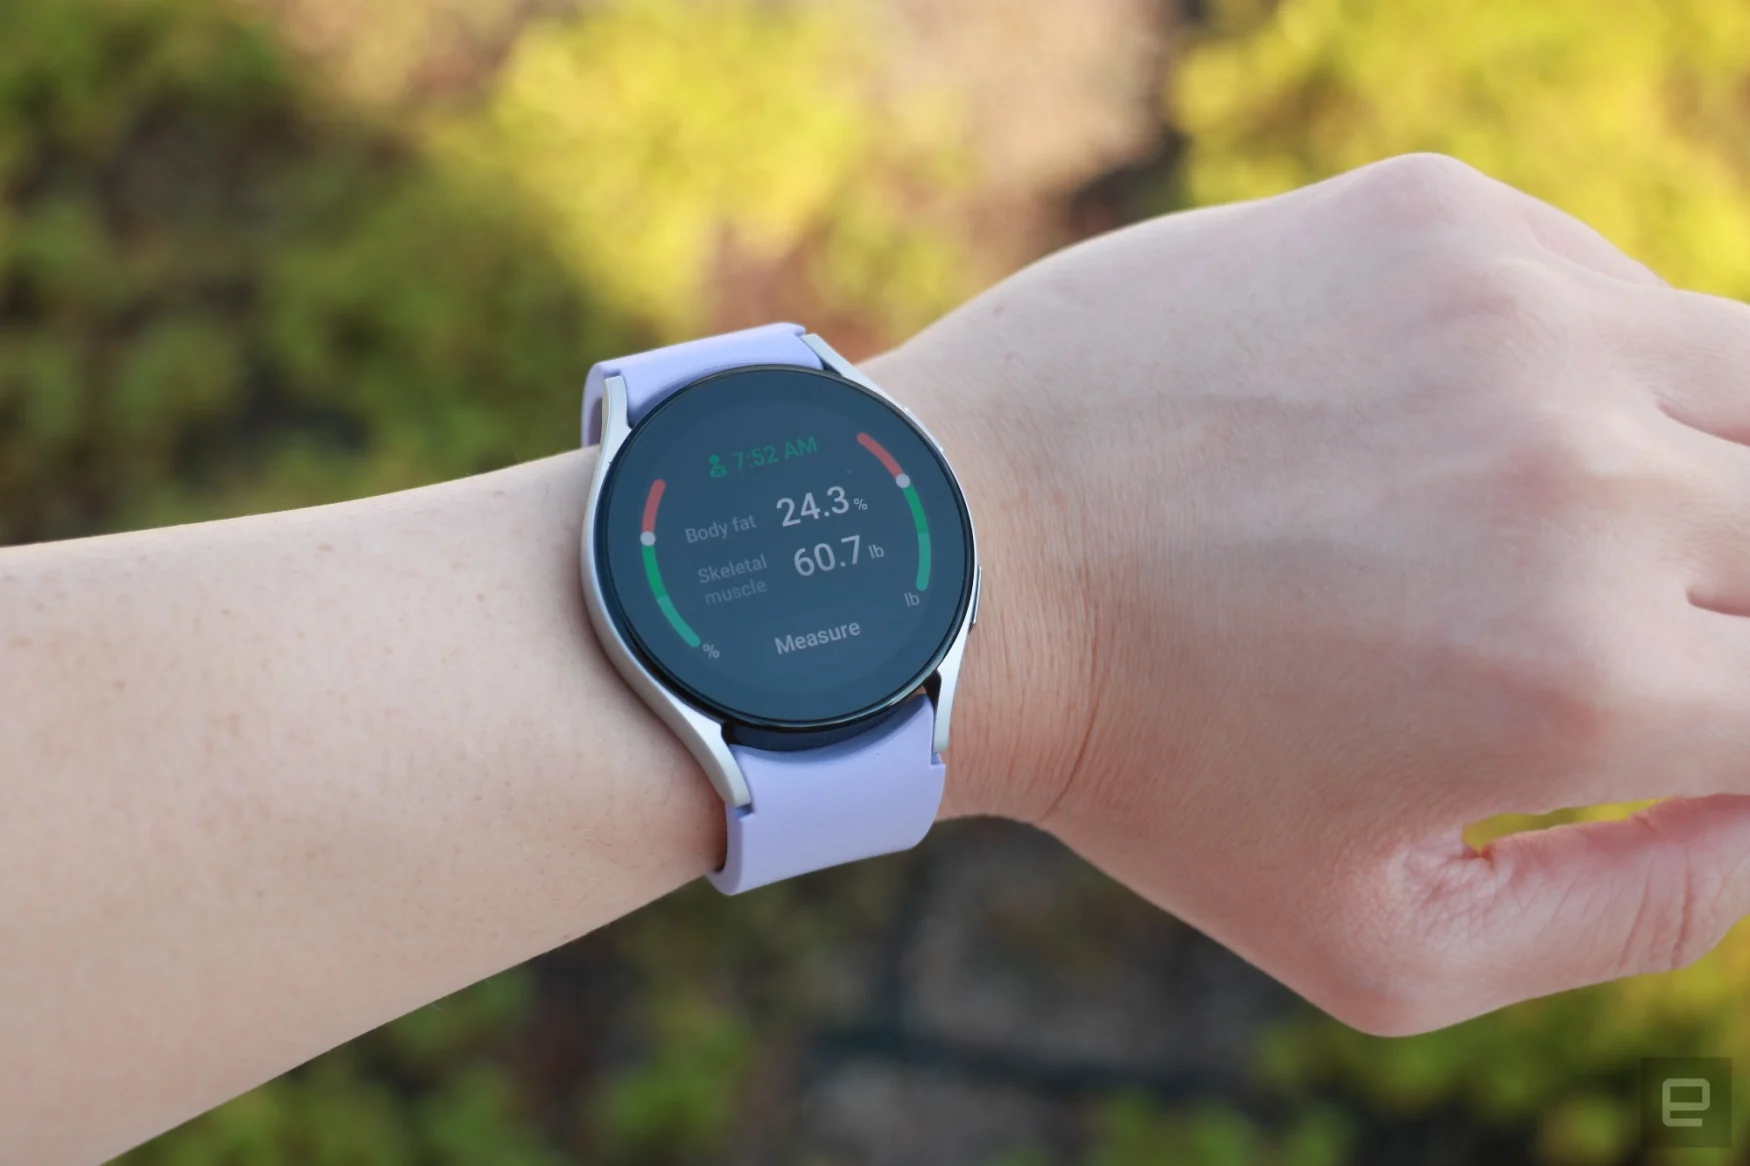 La Samsung Galaxy Watch 5 au poignet, montrant l'outil de composition corporelle de l'appareil avec quelques résultats affichés.  L'écran indique que la graisse corporelle est de 24,3 %, tandis que le muscle squelettique est de 60,7 %.  Un bouton en bas dit 